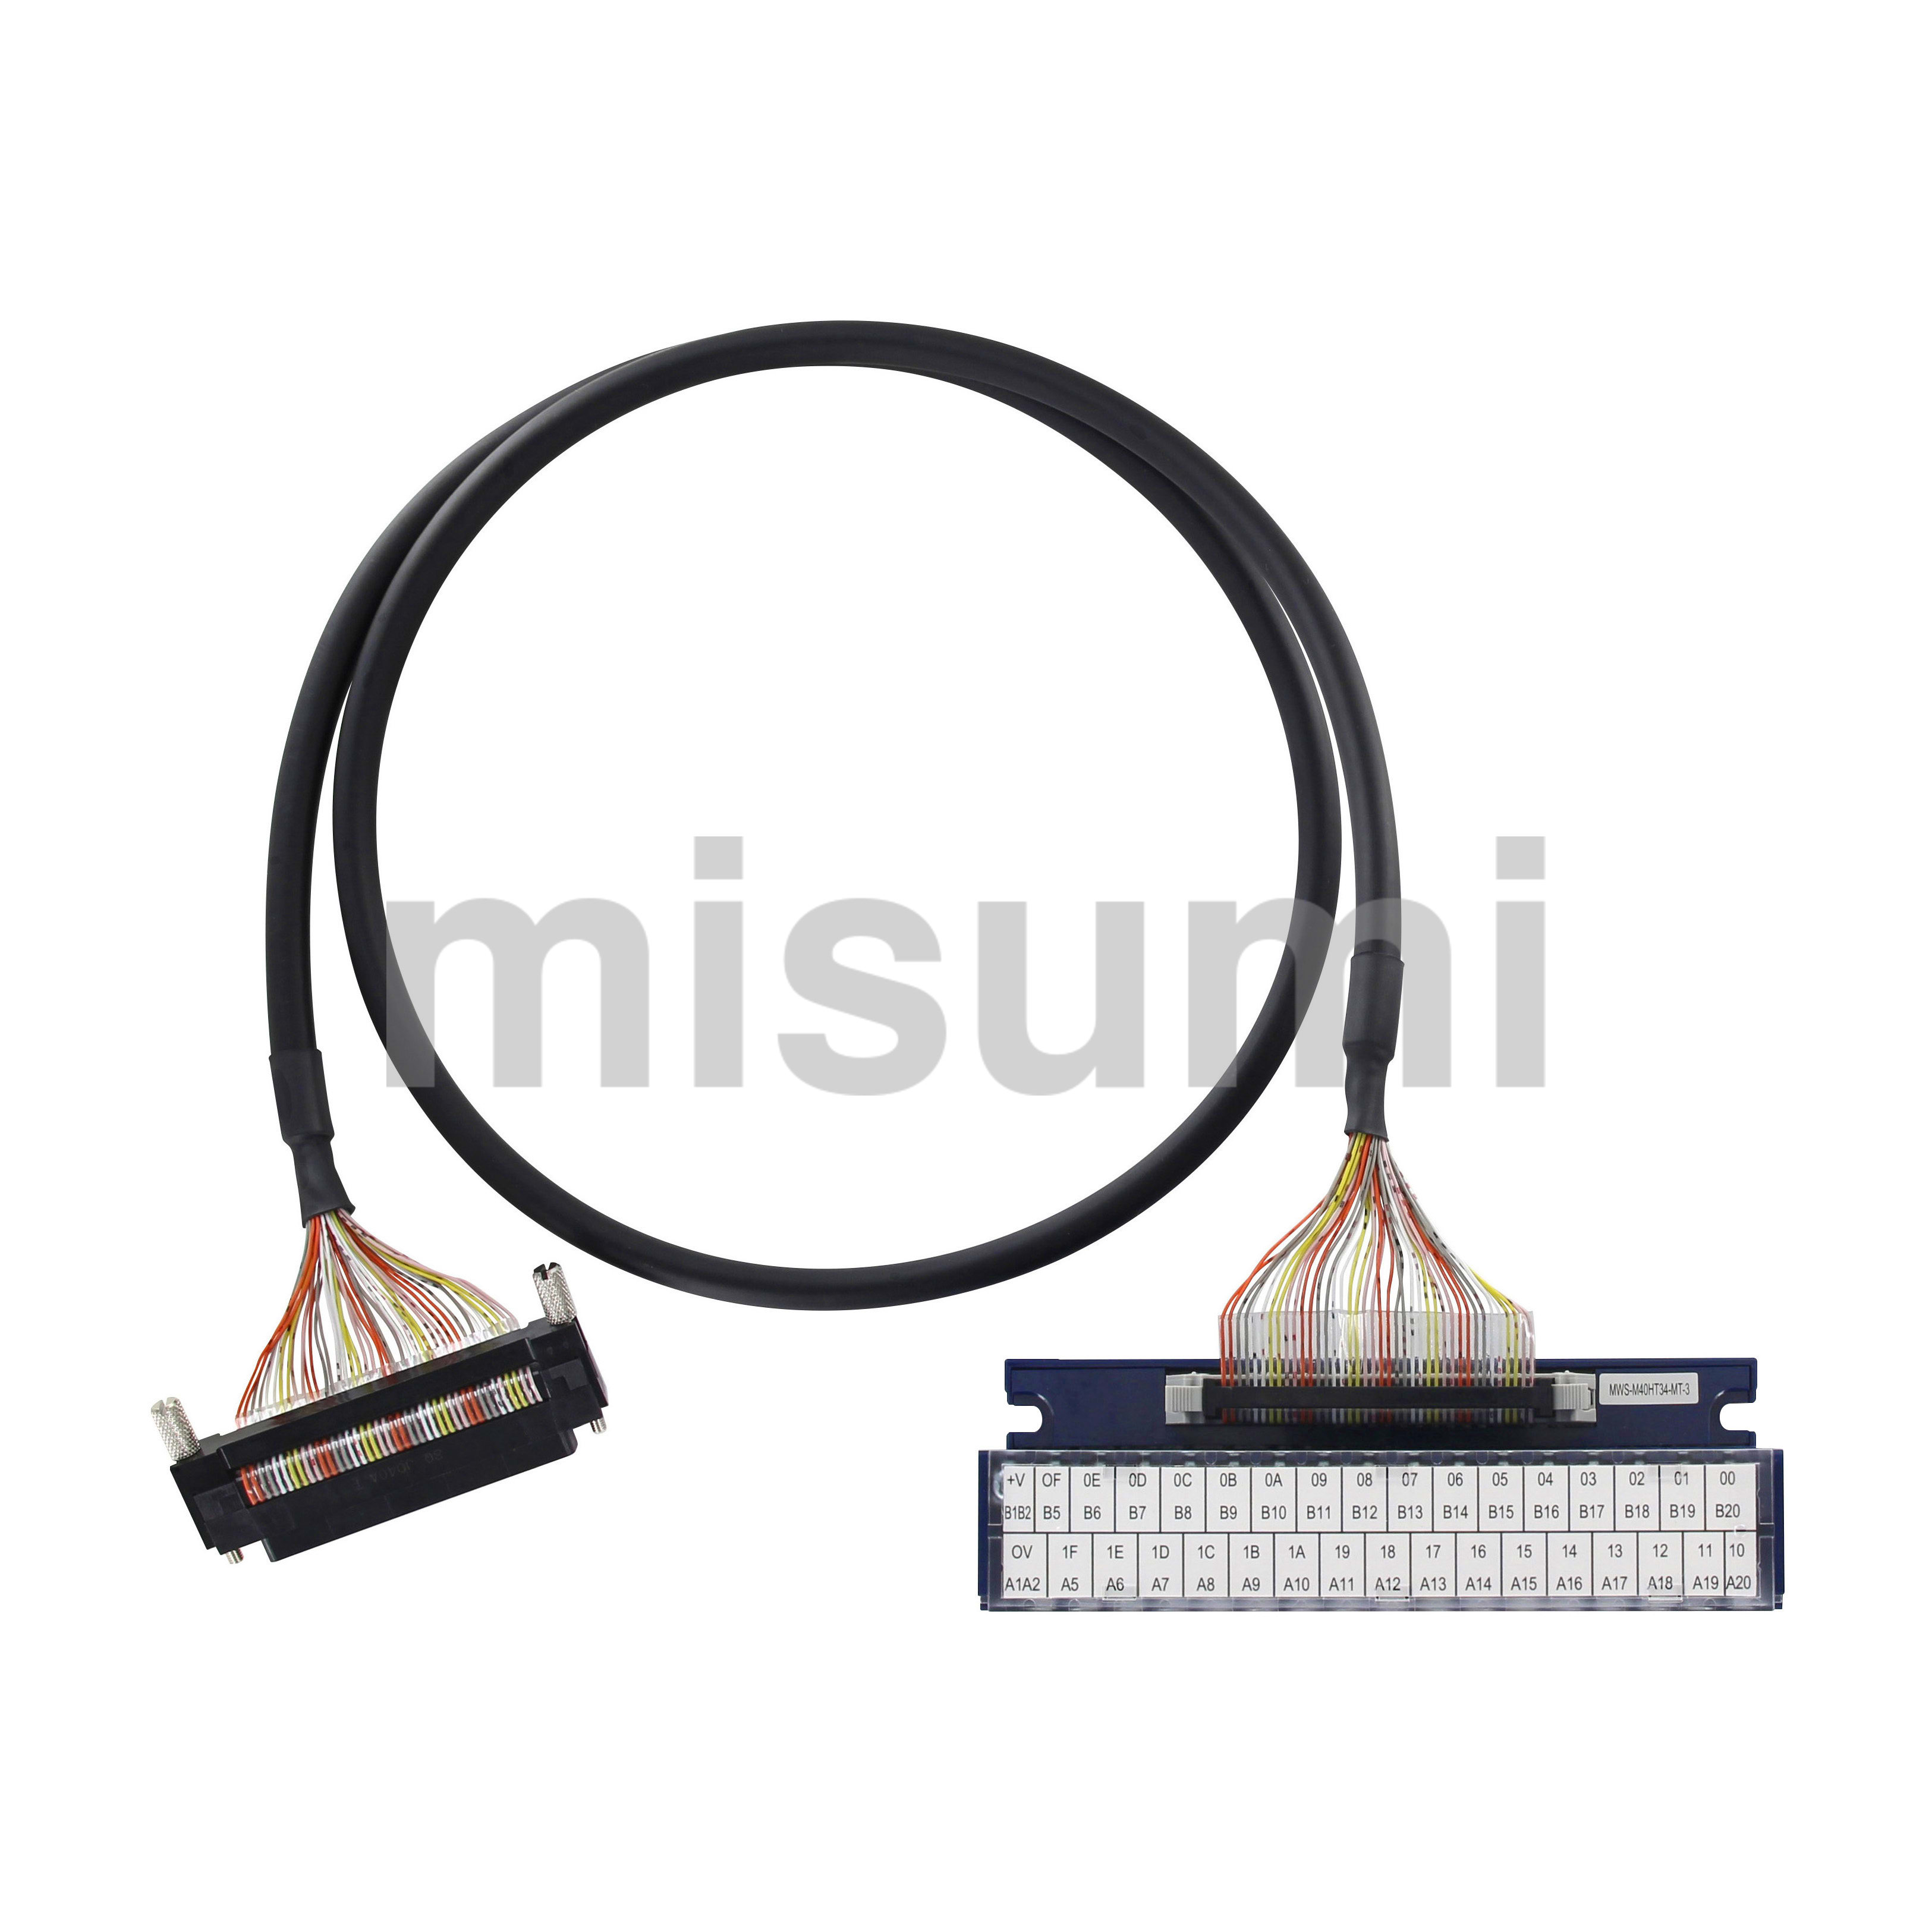 MELSEC-Fシリーズ 増設延長用ケーブル 三菱電機 MISUMI(ミスミ)